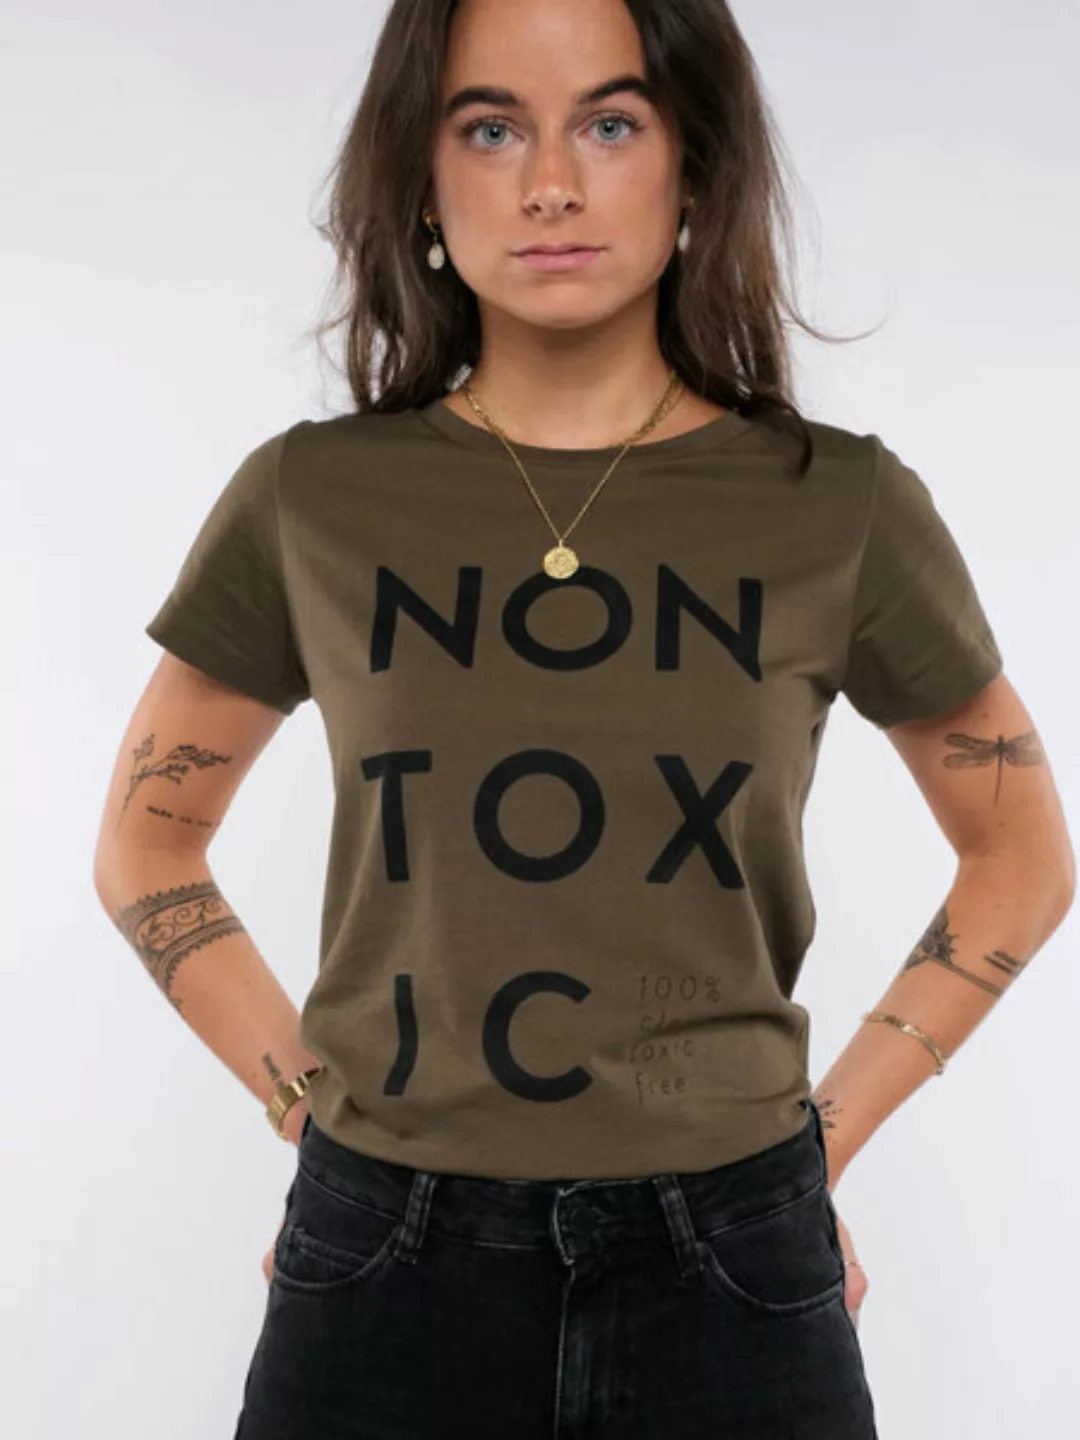 Damen T-shirt - Non Toxic günstig online kaufen